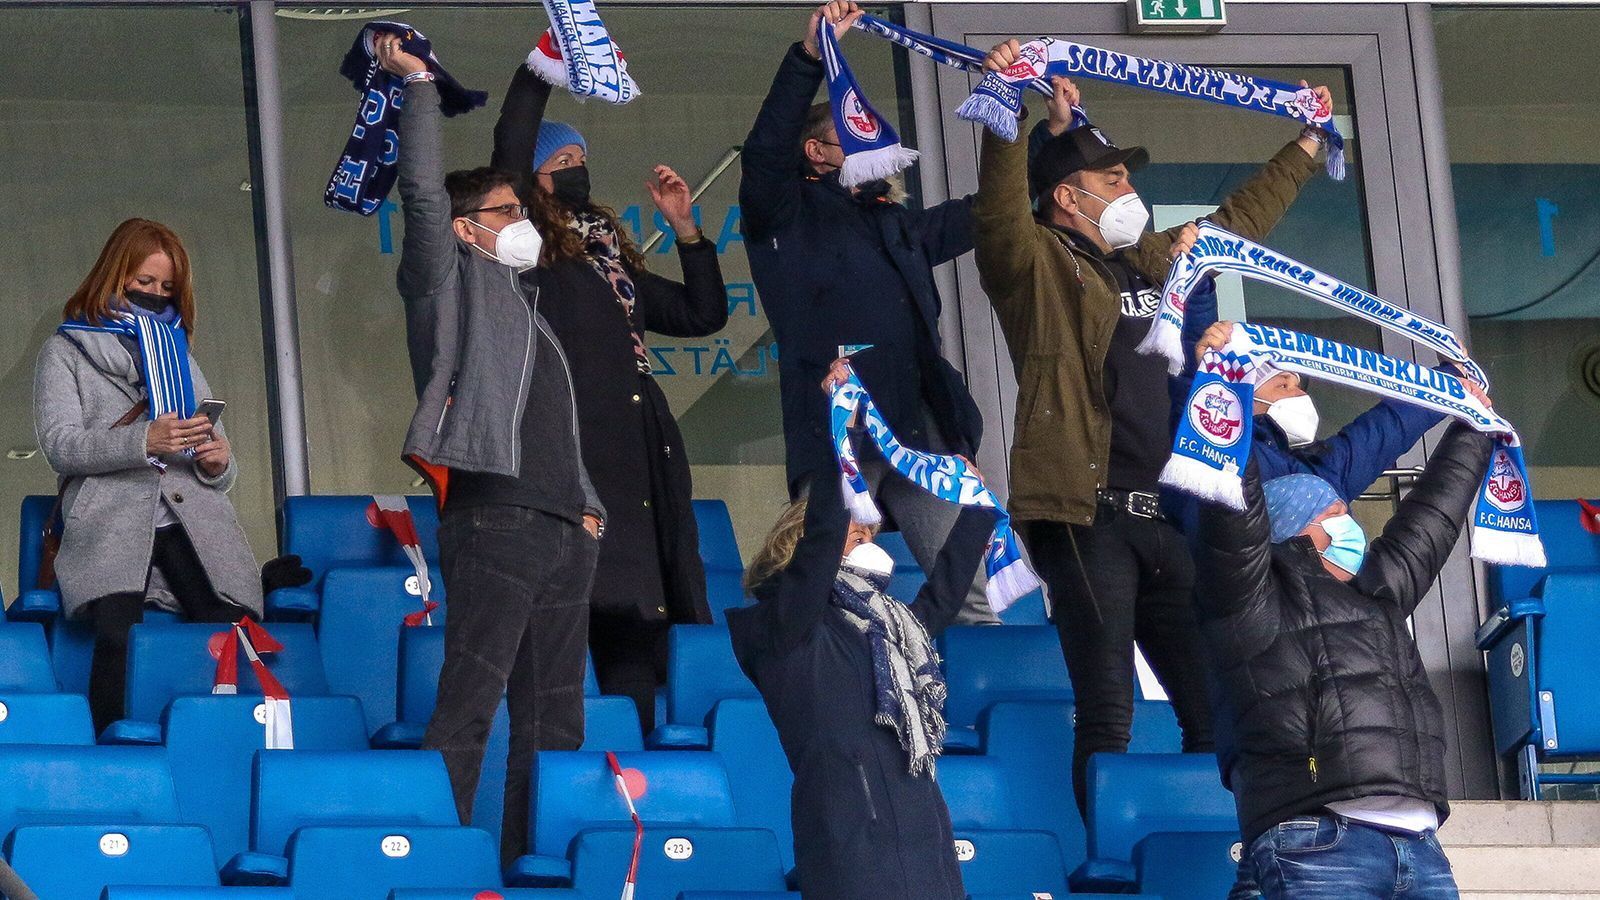 
                <strong>Fans mit Schal und Maske</strong><br>
                Die 700 Glücklichen auf den Rängen feuerten ihr Team an - mit Schal und Maske.
              